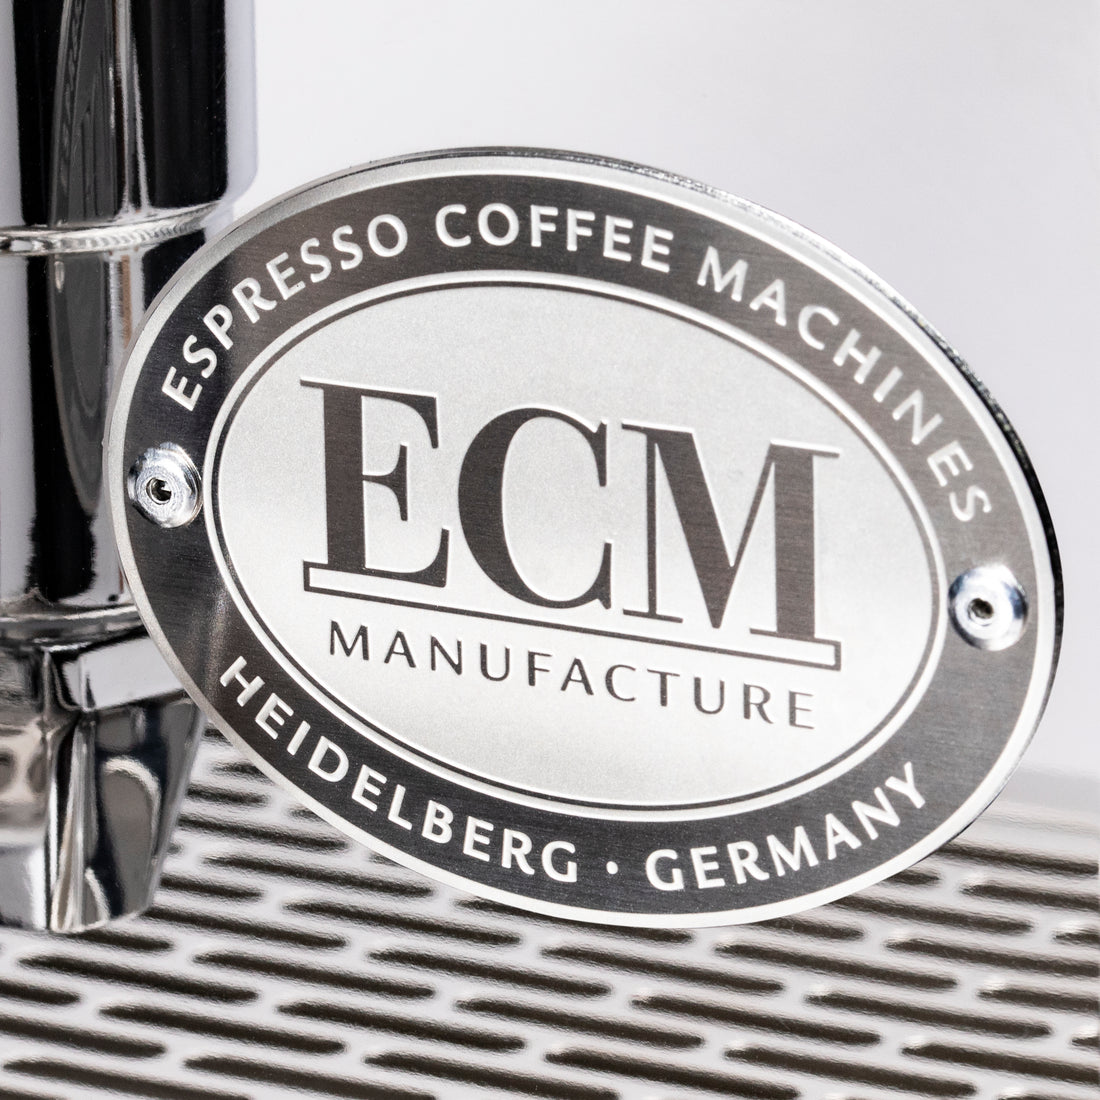 ECM Classika PID Espresso Machine with Flow Control